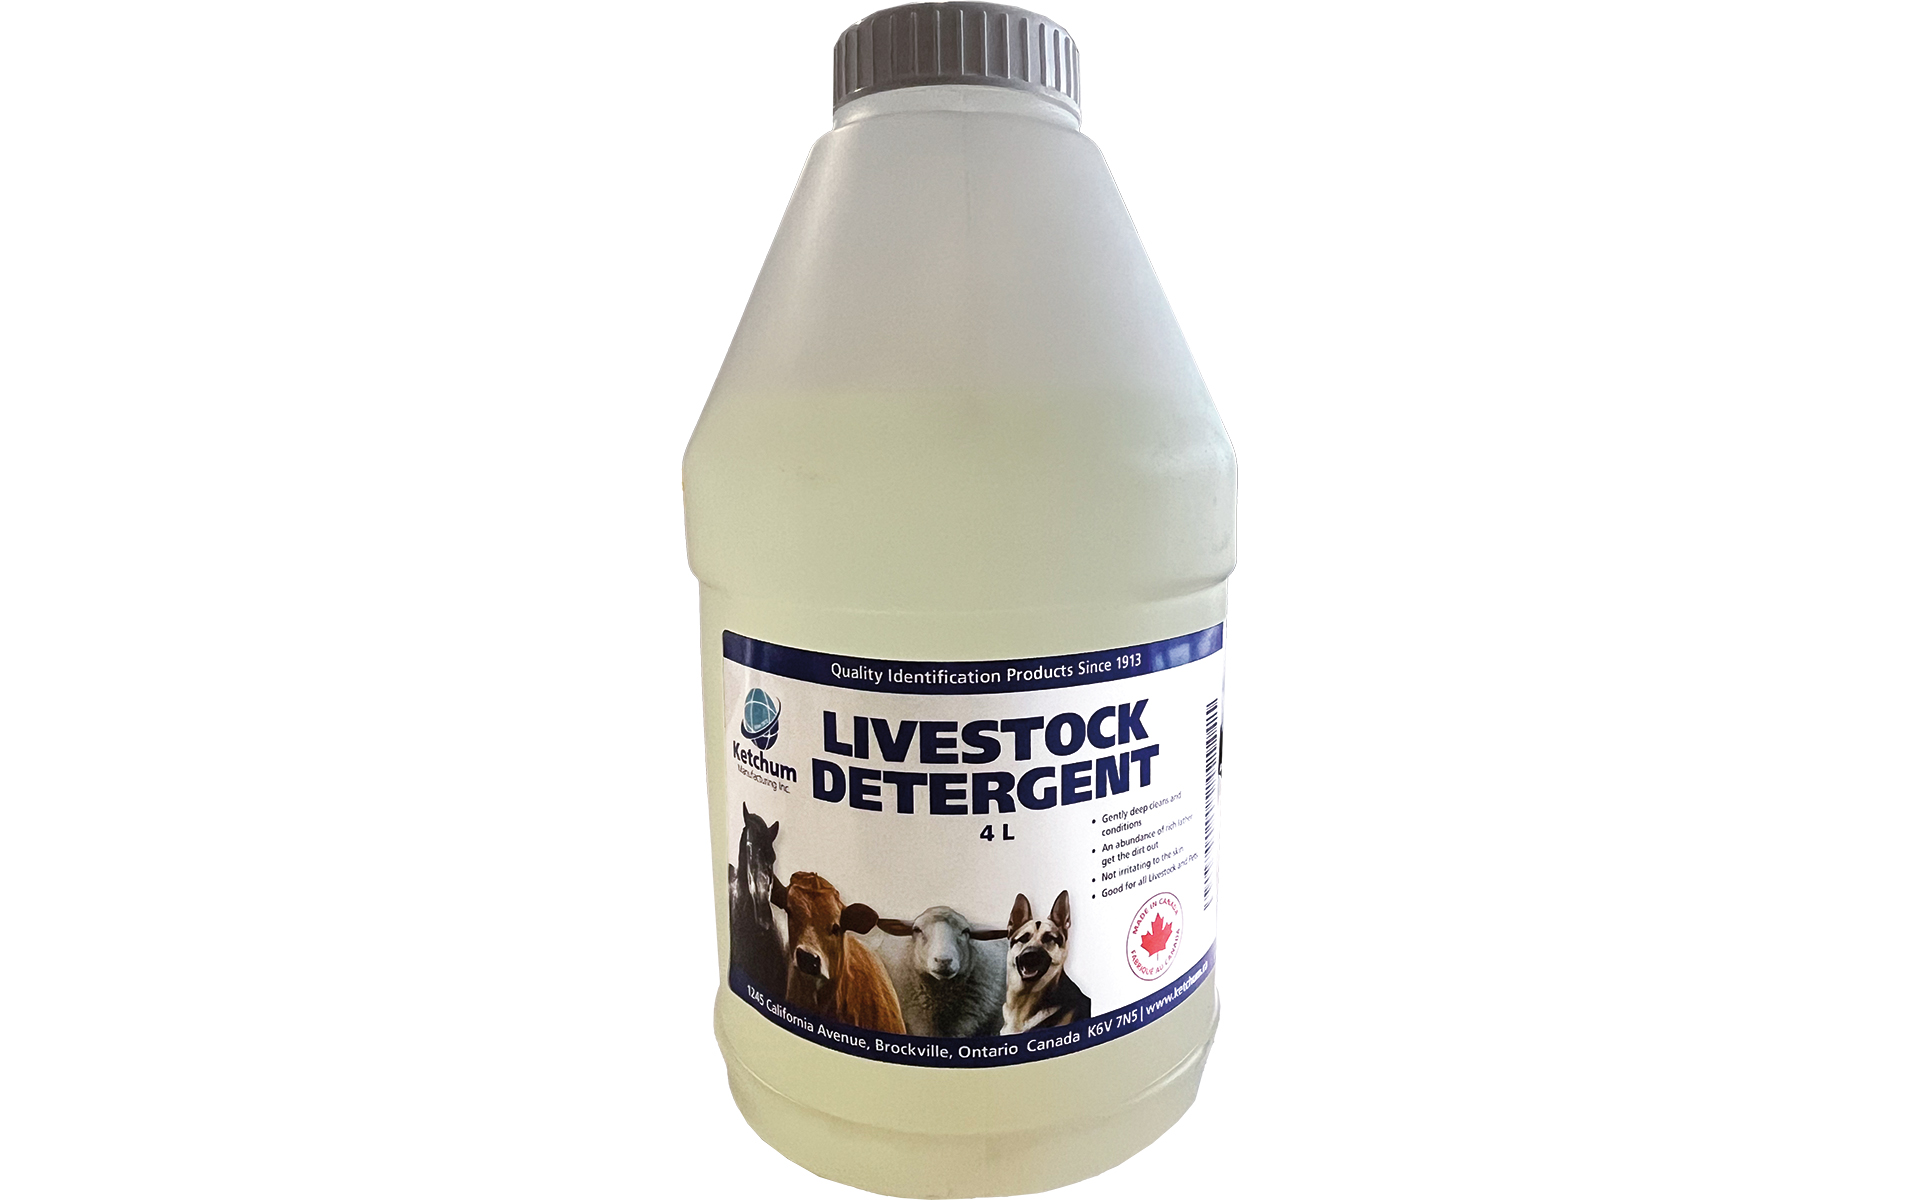 Ketchum Livestock Detergent, 4L